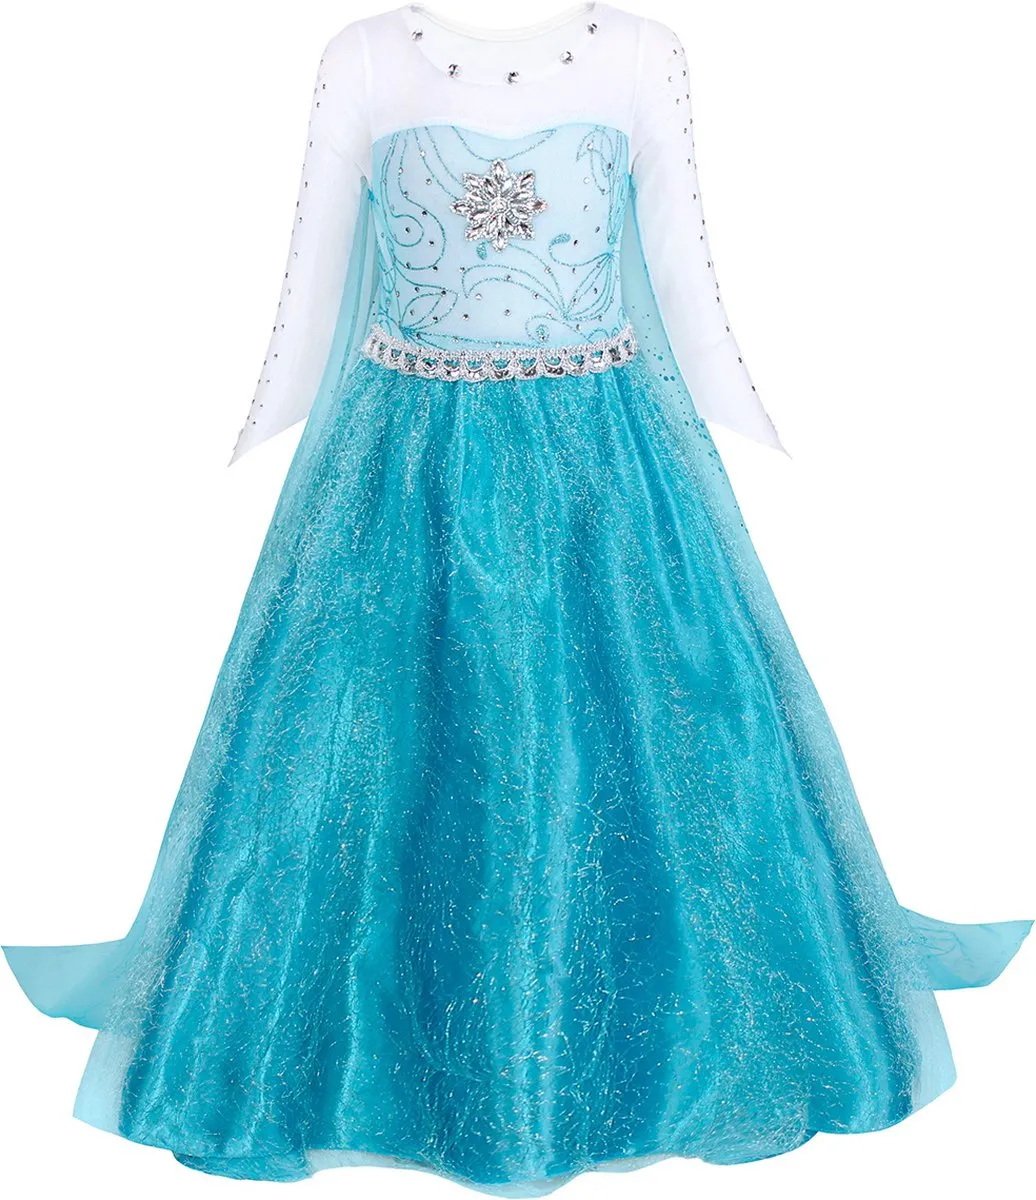 Joya Beauty® Elsa Verkleed Jurk met Ster | Glamour Jurk met sleep | Prinsessenjurk meisje | Disney jurk Verkleedjurk | GRATIS Accessoires set | Blauw | Maat 110/116 (110) | Sinterklaas kado cadeau meisje speelgoed